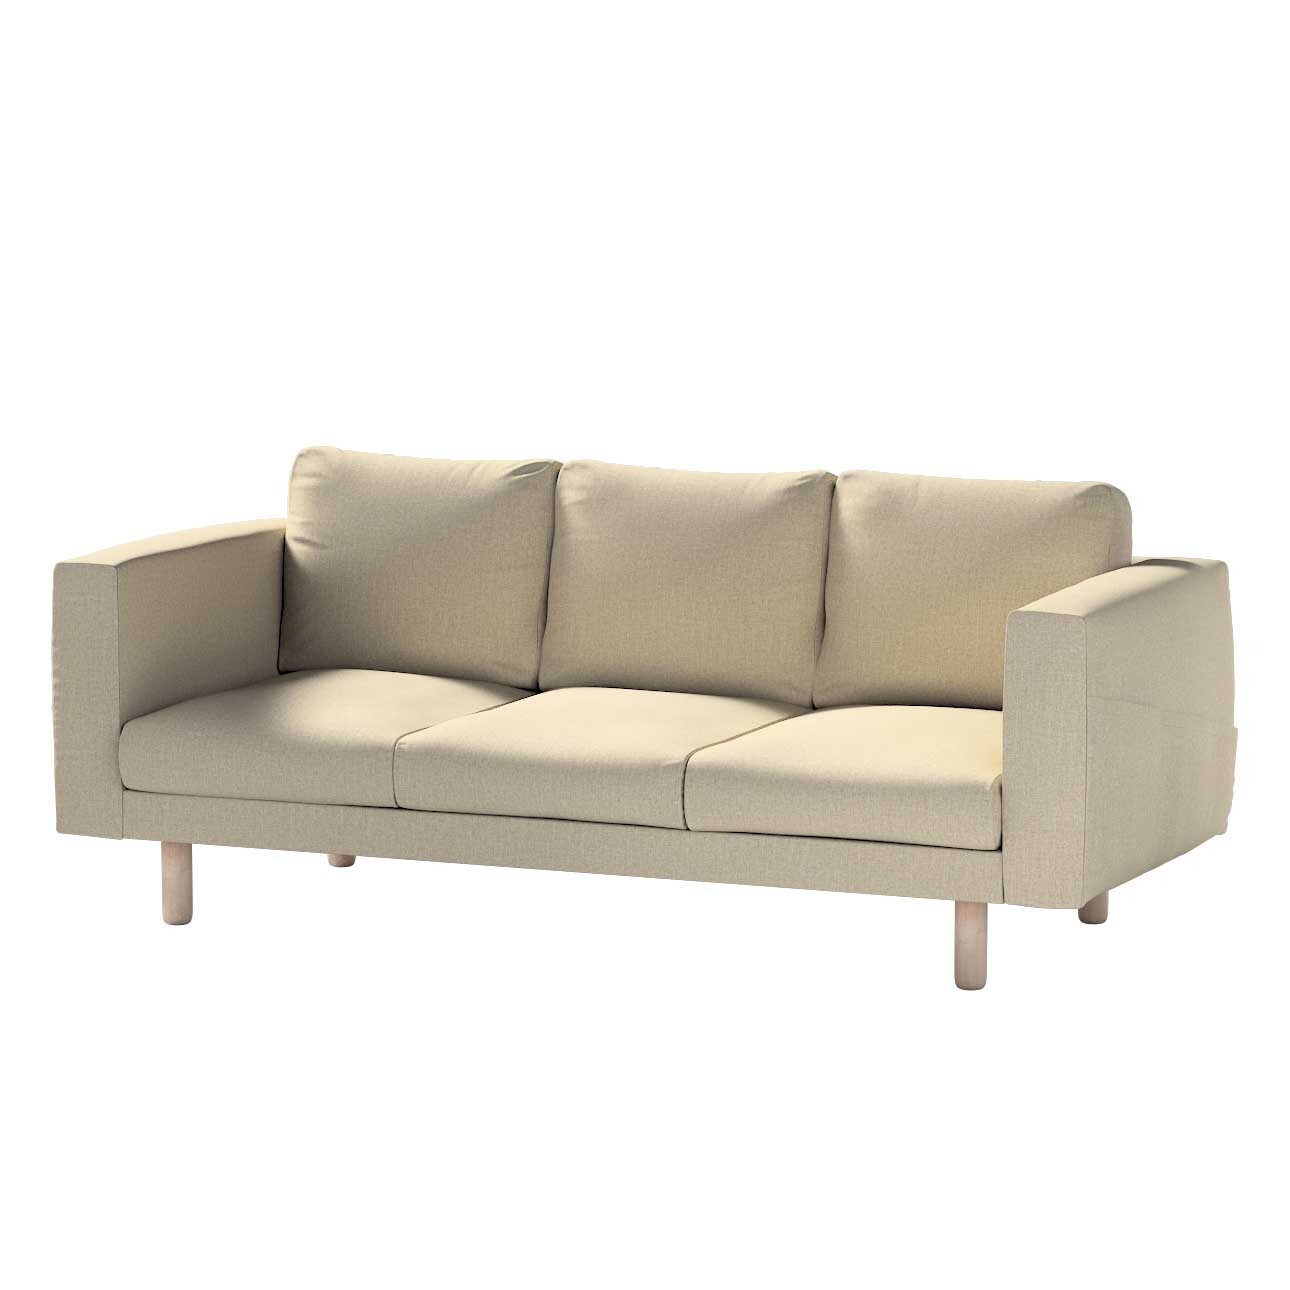 Bezug für Norsborg 3-Sitzer Sofa, beige- grau, Norsborg 3-Sitzer Sofabezug, günstig online kaufen